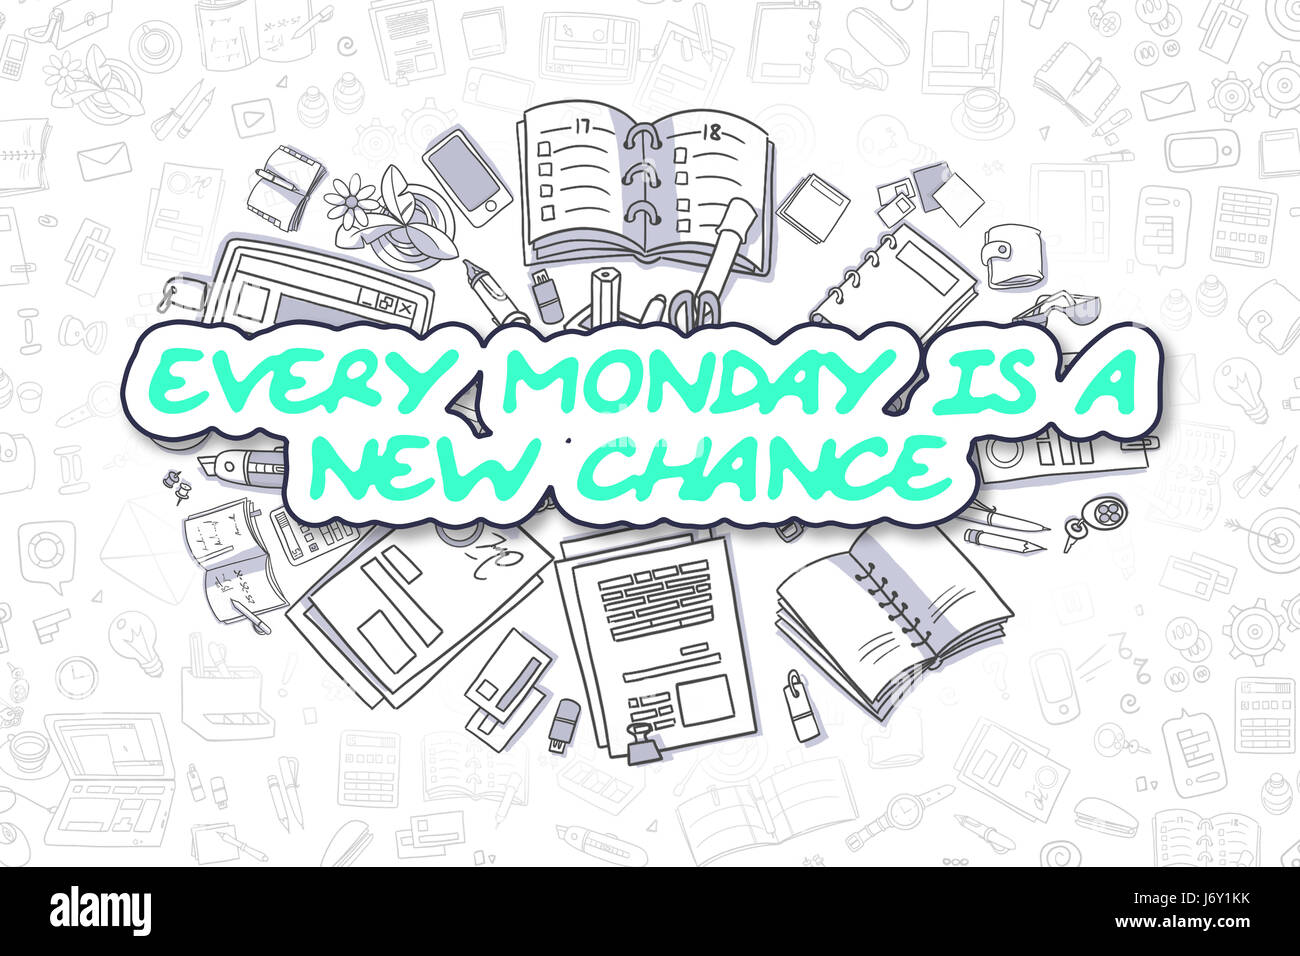 Ogni lunedì è una nuova chance - Concetto di affari. Foto Stock